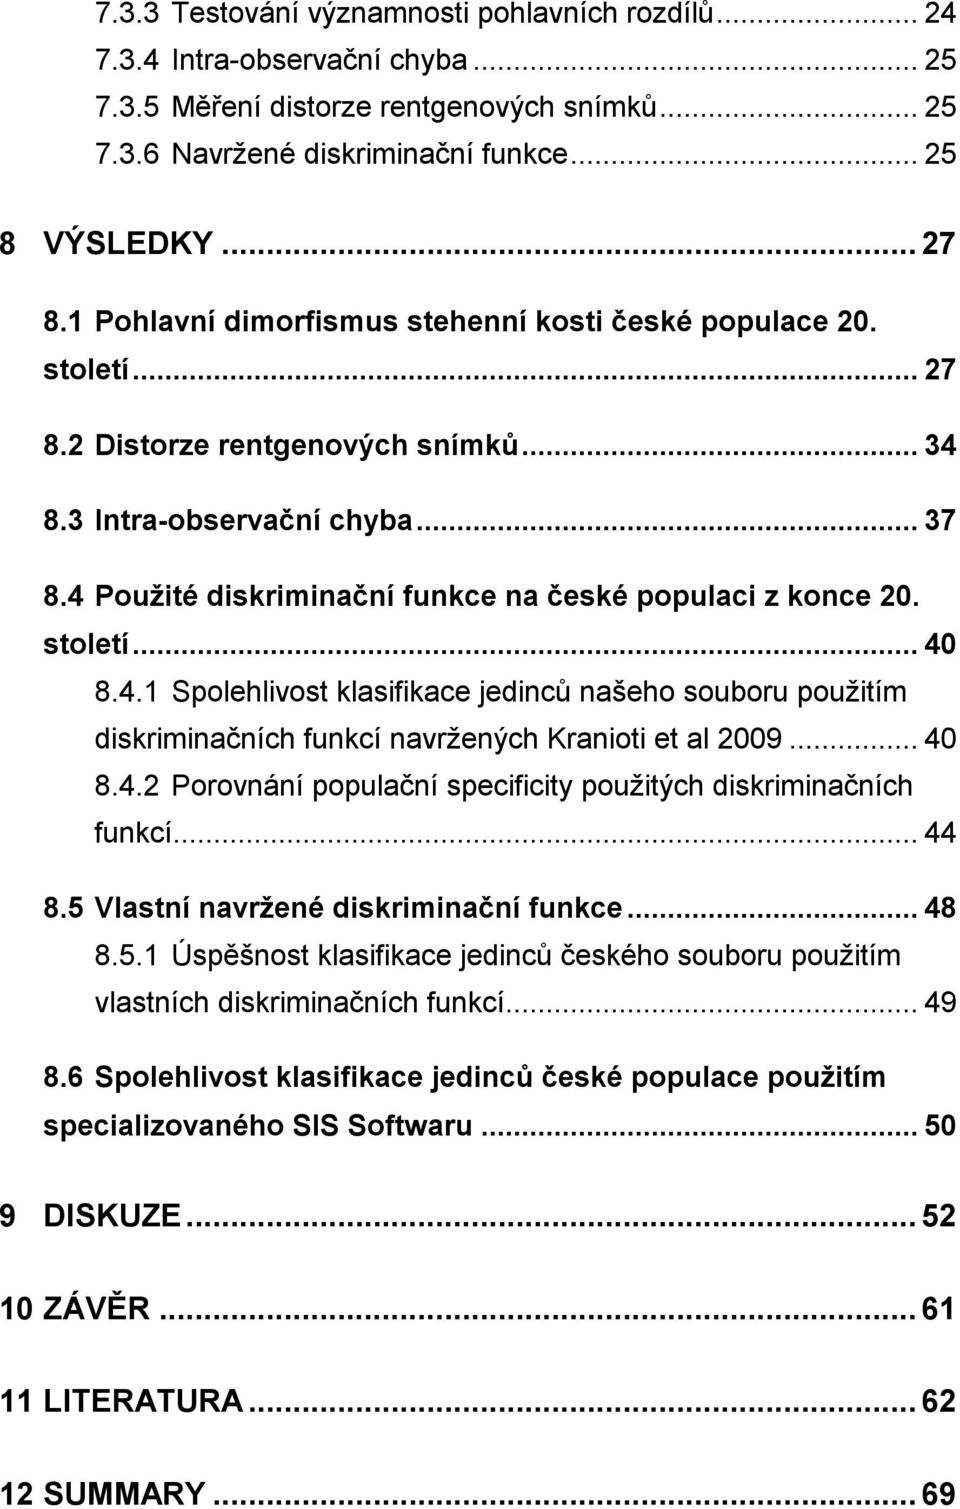 4 Použité diskriminační funkce na české populaci z konce 20. století... 40 8.4.1 Spolehlivost klasifikace jedinců našeho souboru použitím diskriminačních funkcí navržených Kranioti et al 2009... 40 8.4.2 Porovnání populační specificity použitých diskriminačních funkcí.